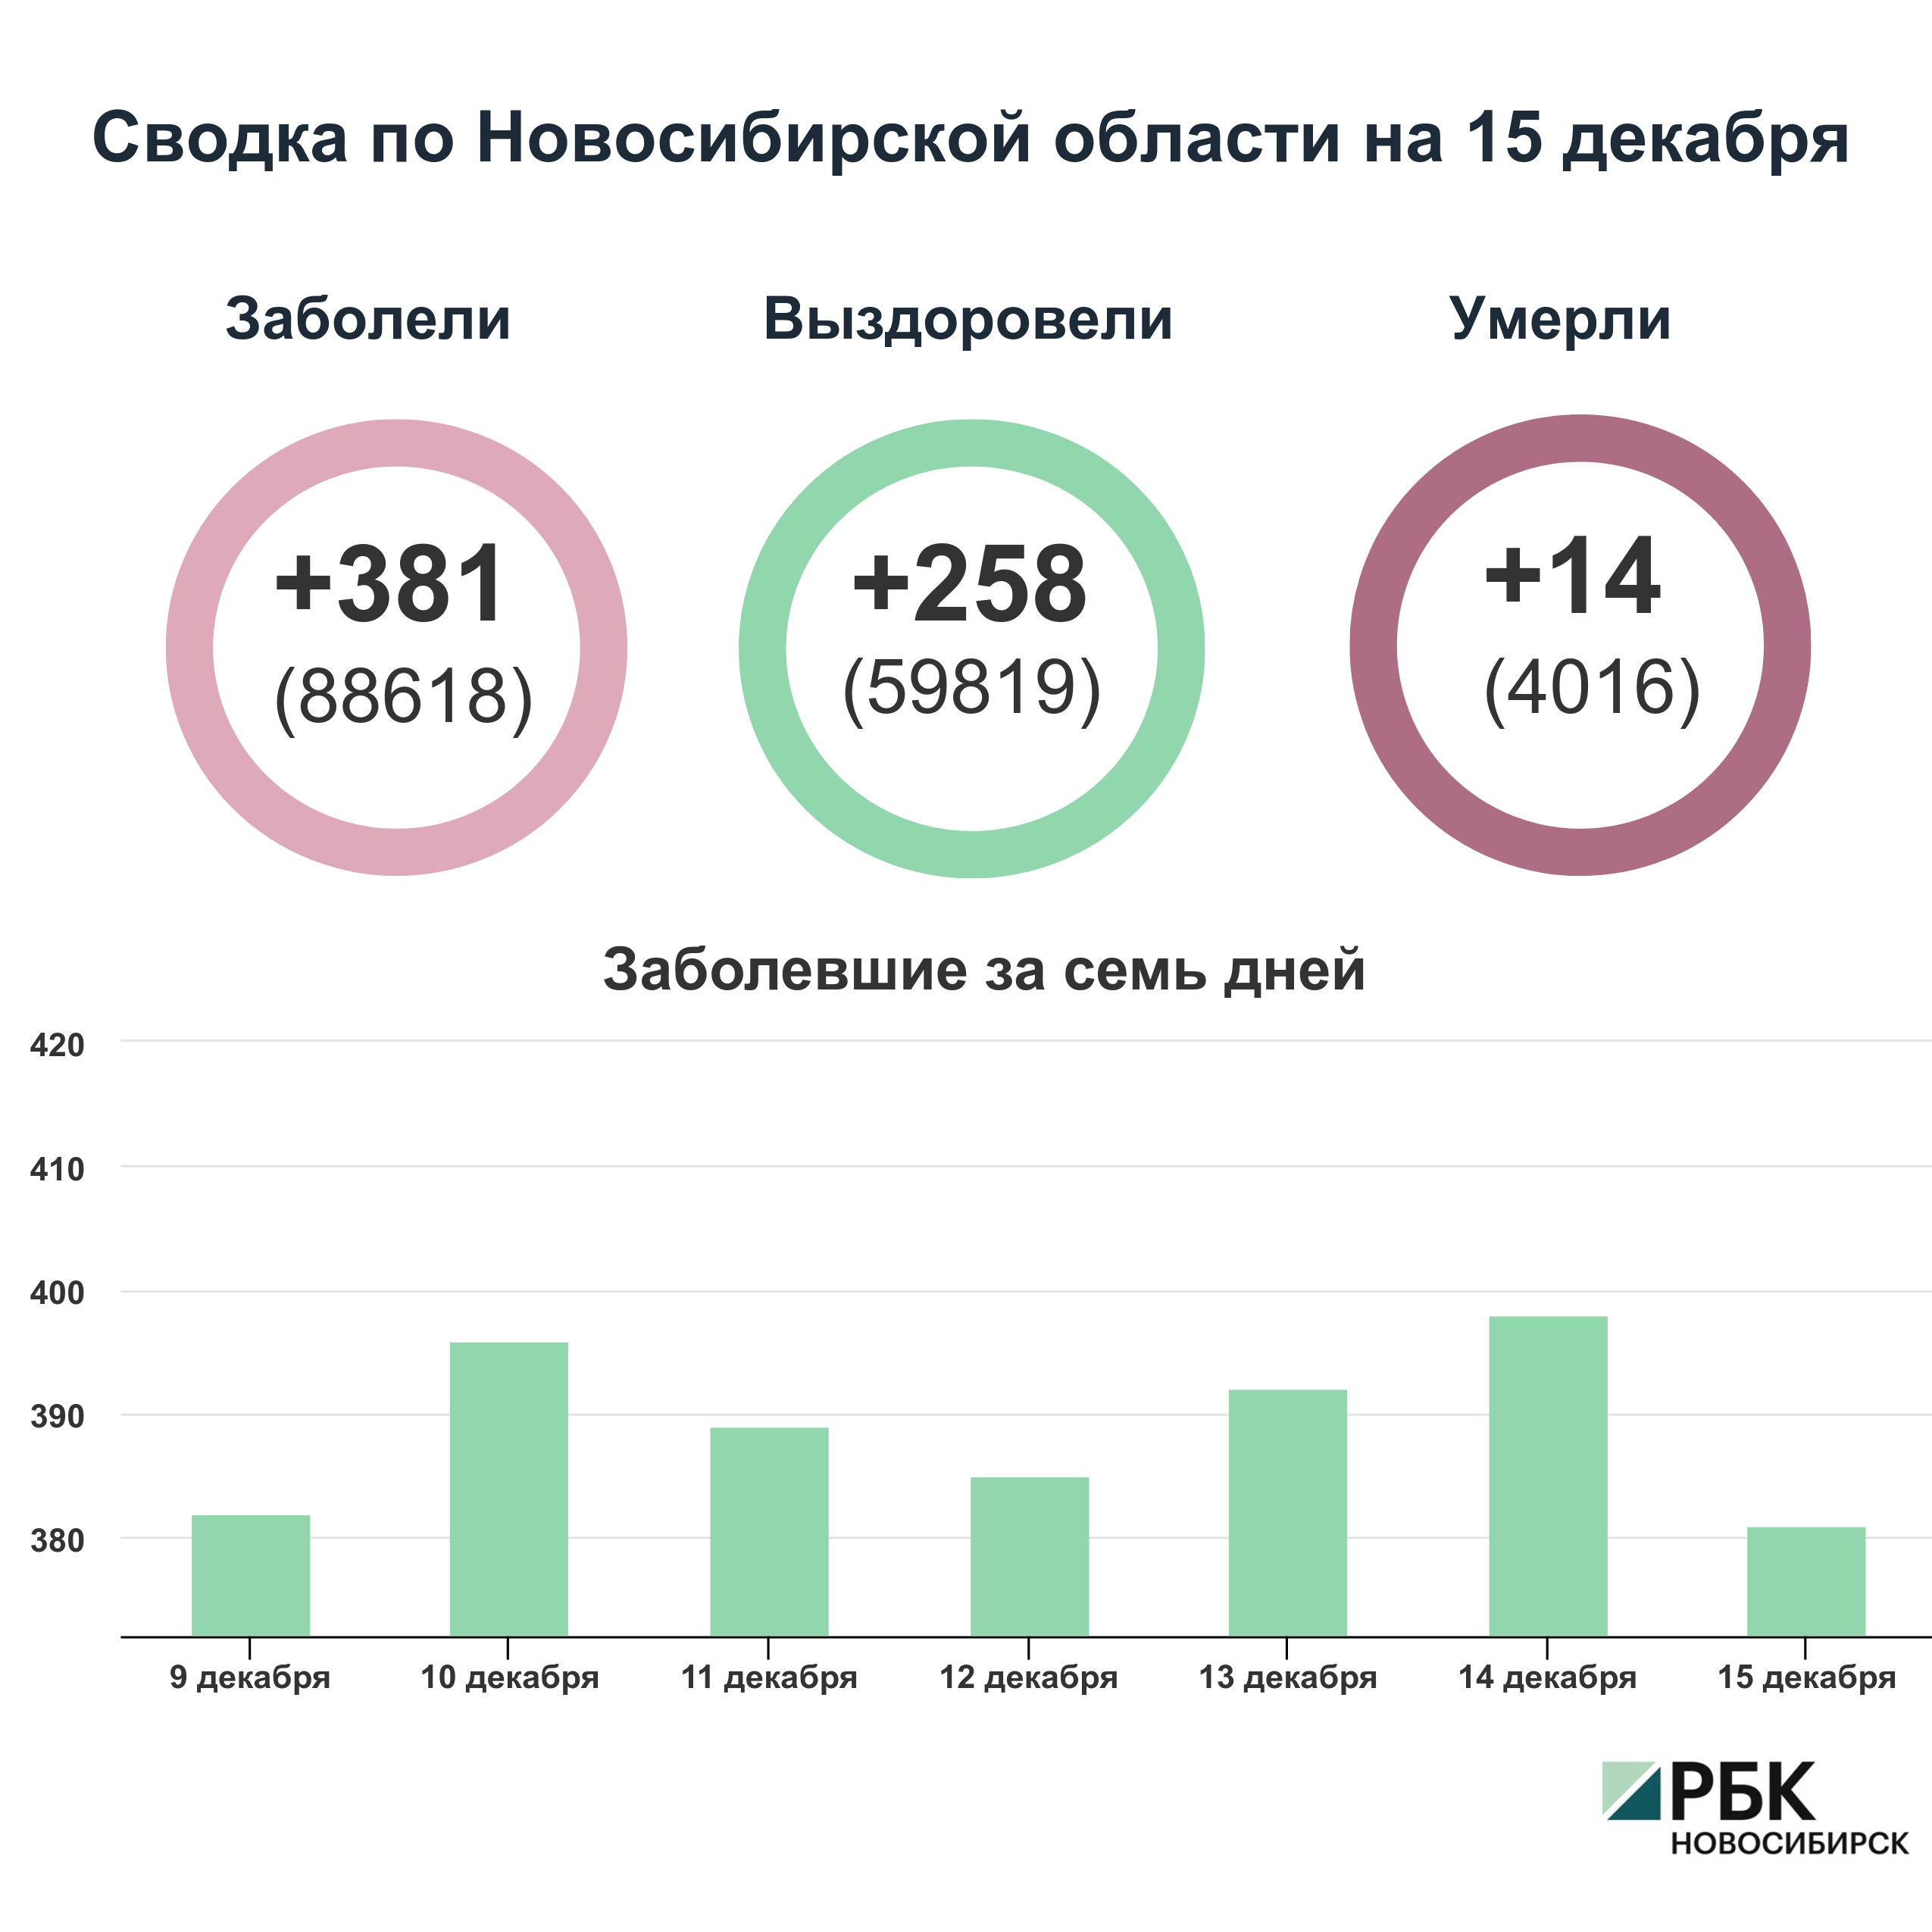 Коронавирус в Новосибирске: сводка на 15 декабря